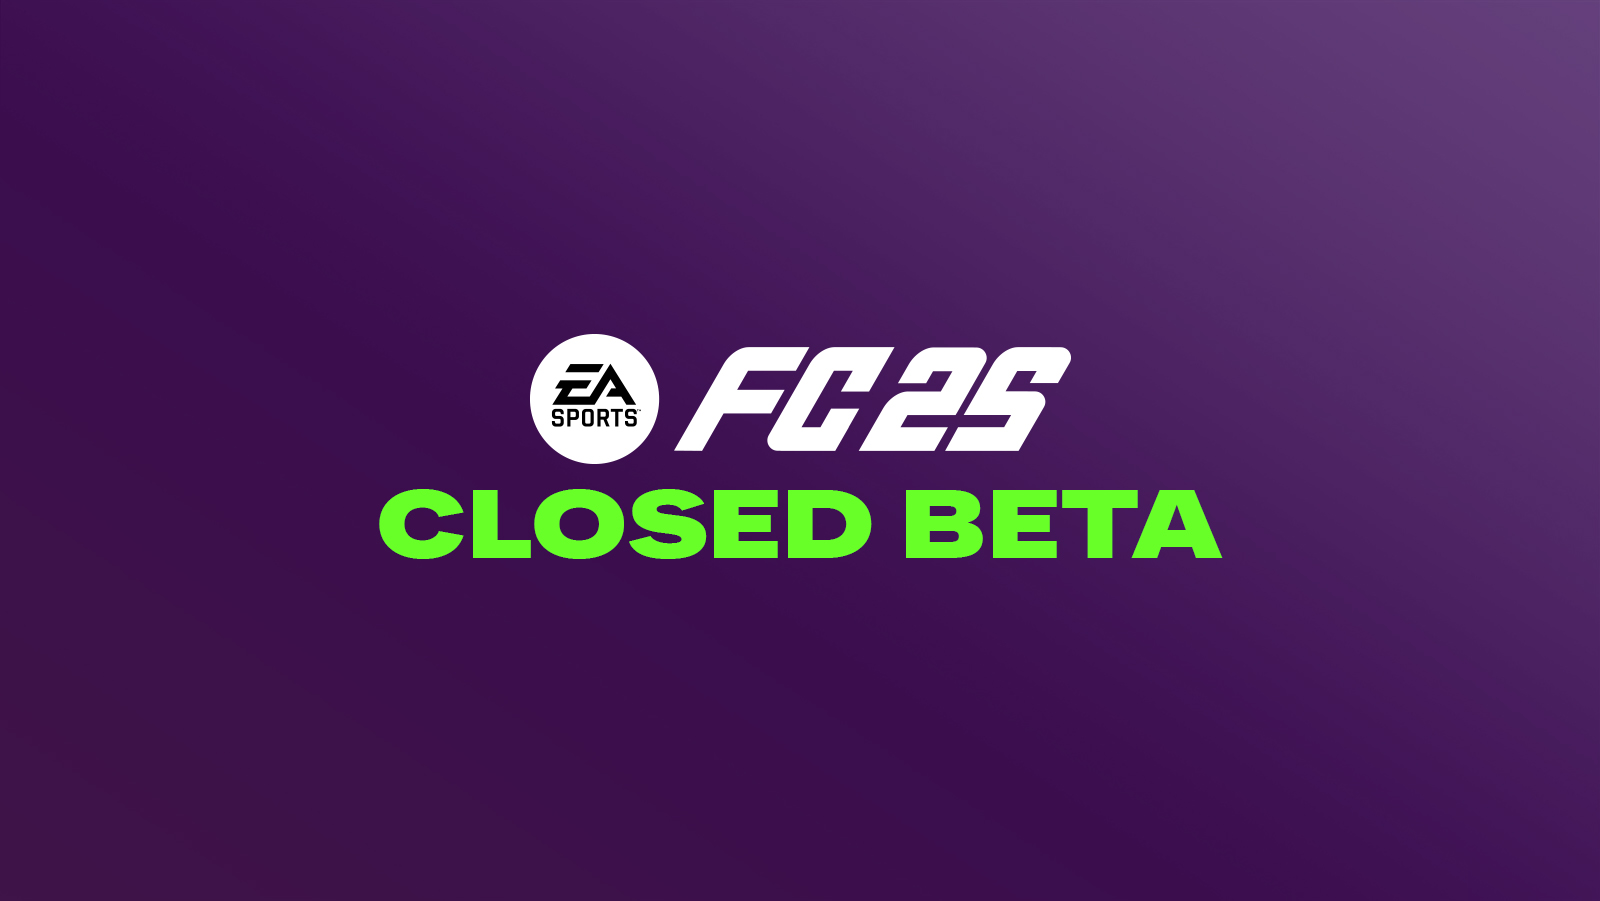 FC 25 Closed Beta